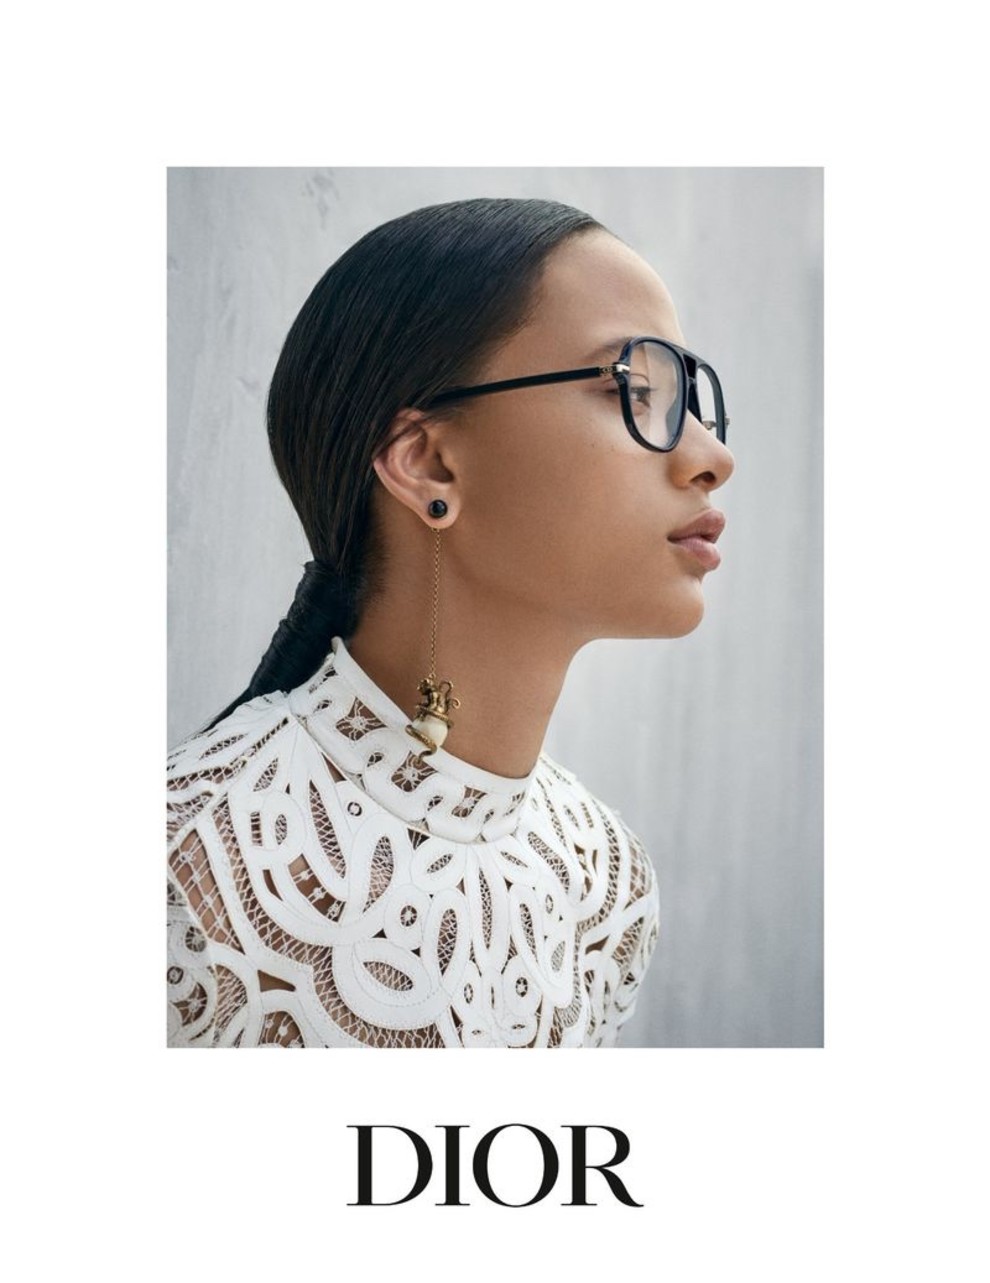 Dior Eyewear Resort 2019 